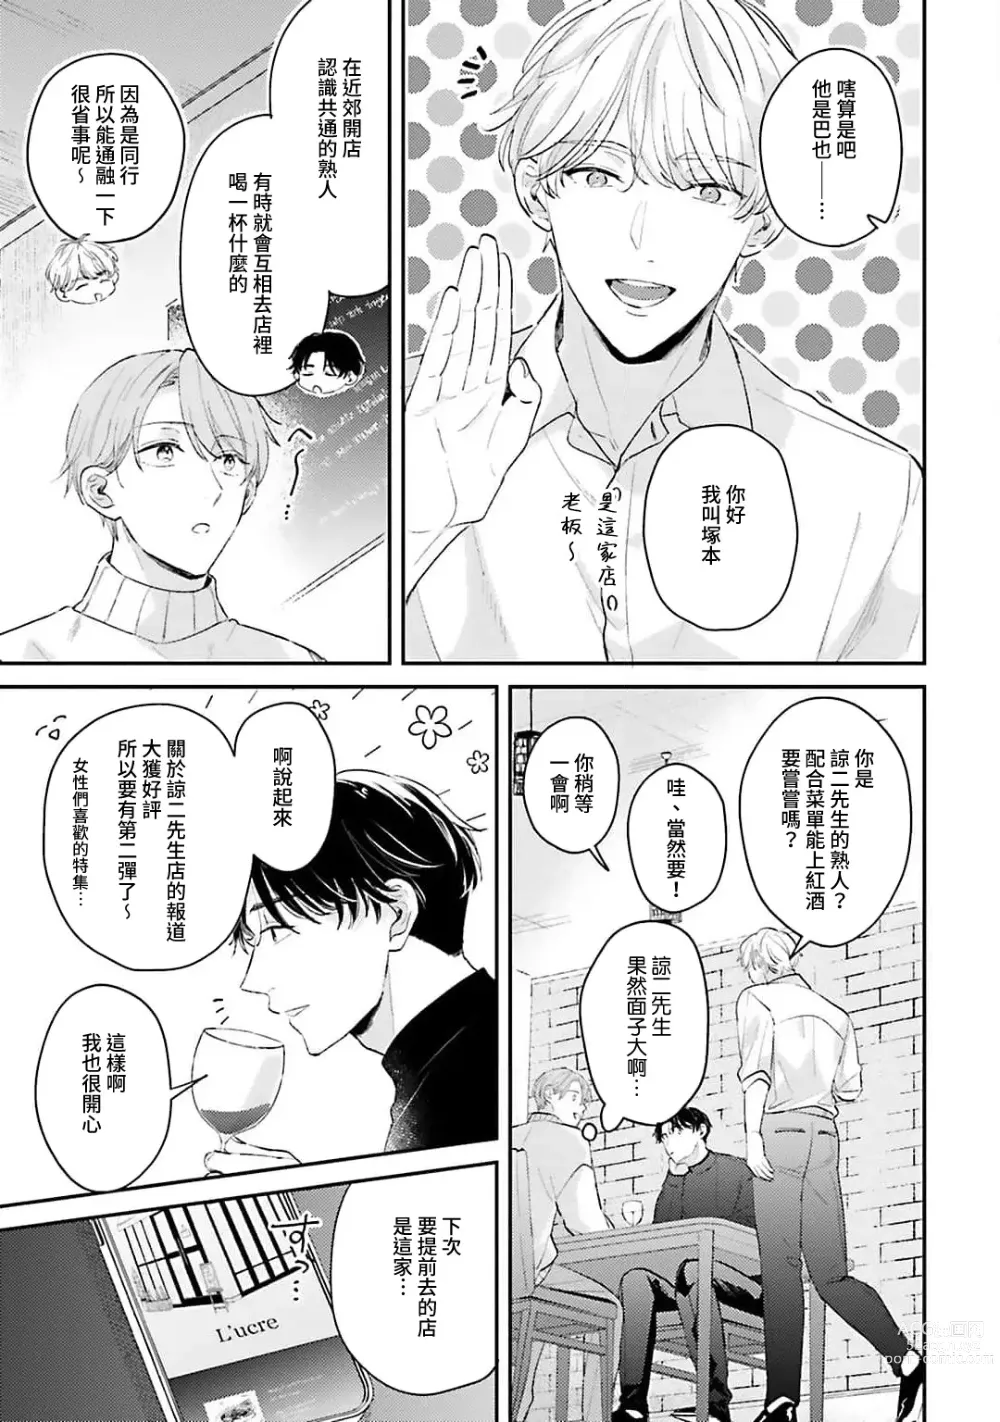 Page 106 of manga 绽放的恋爱皆为醉与甜1